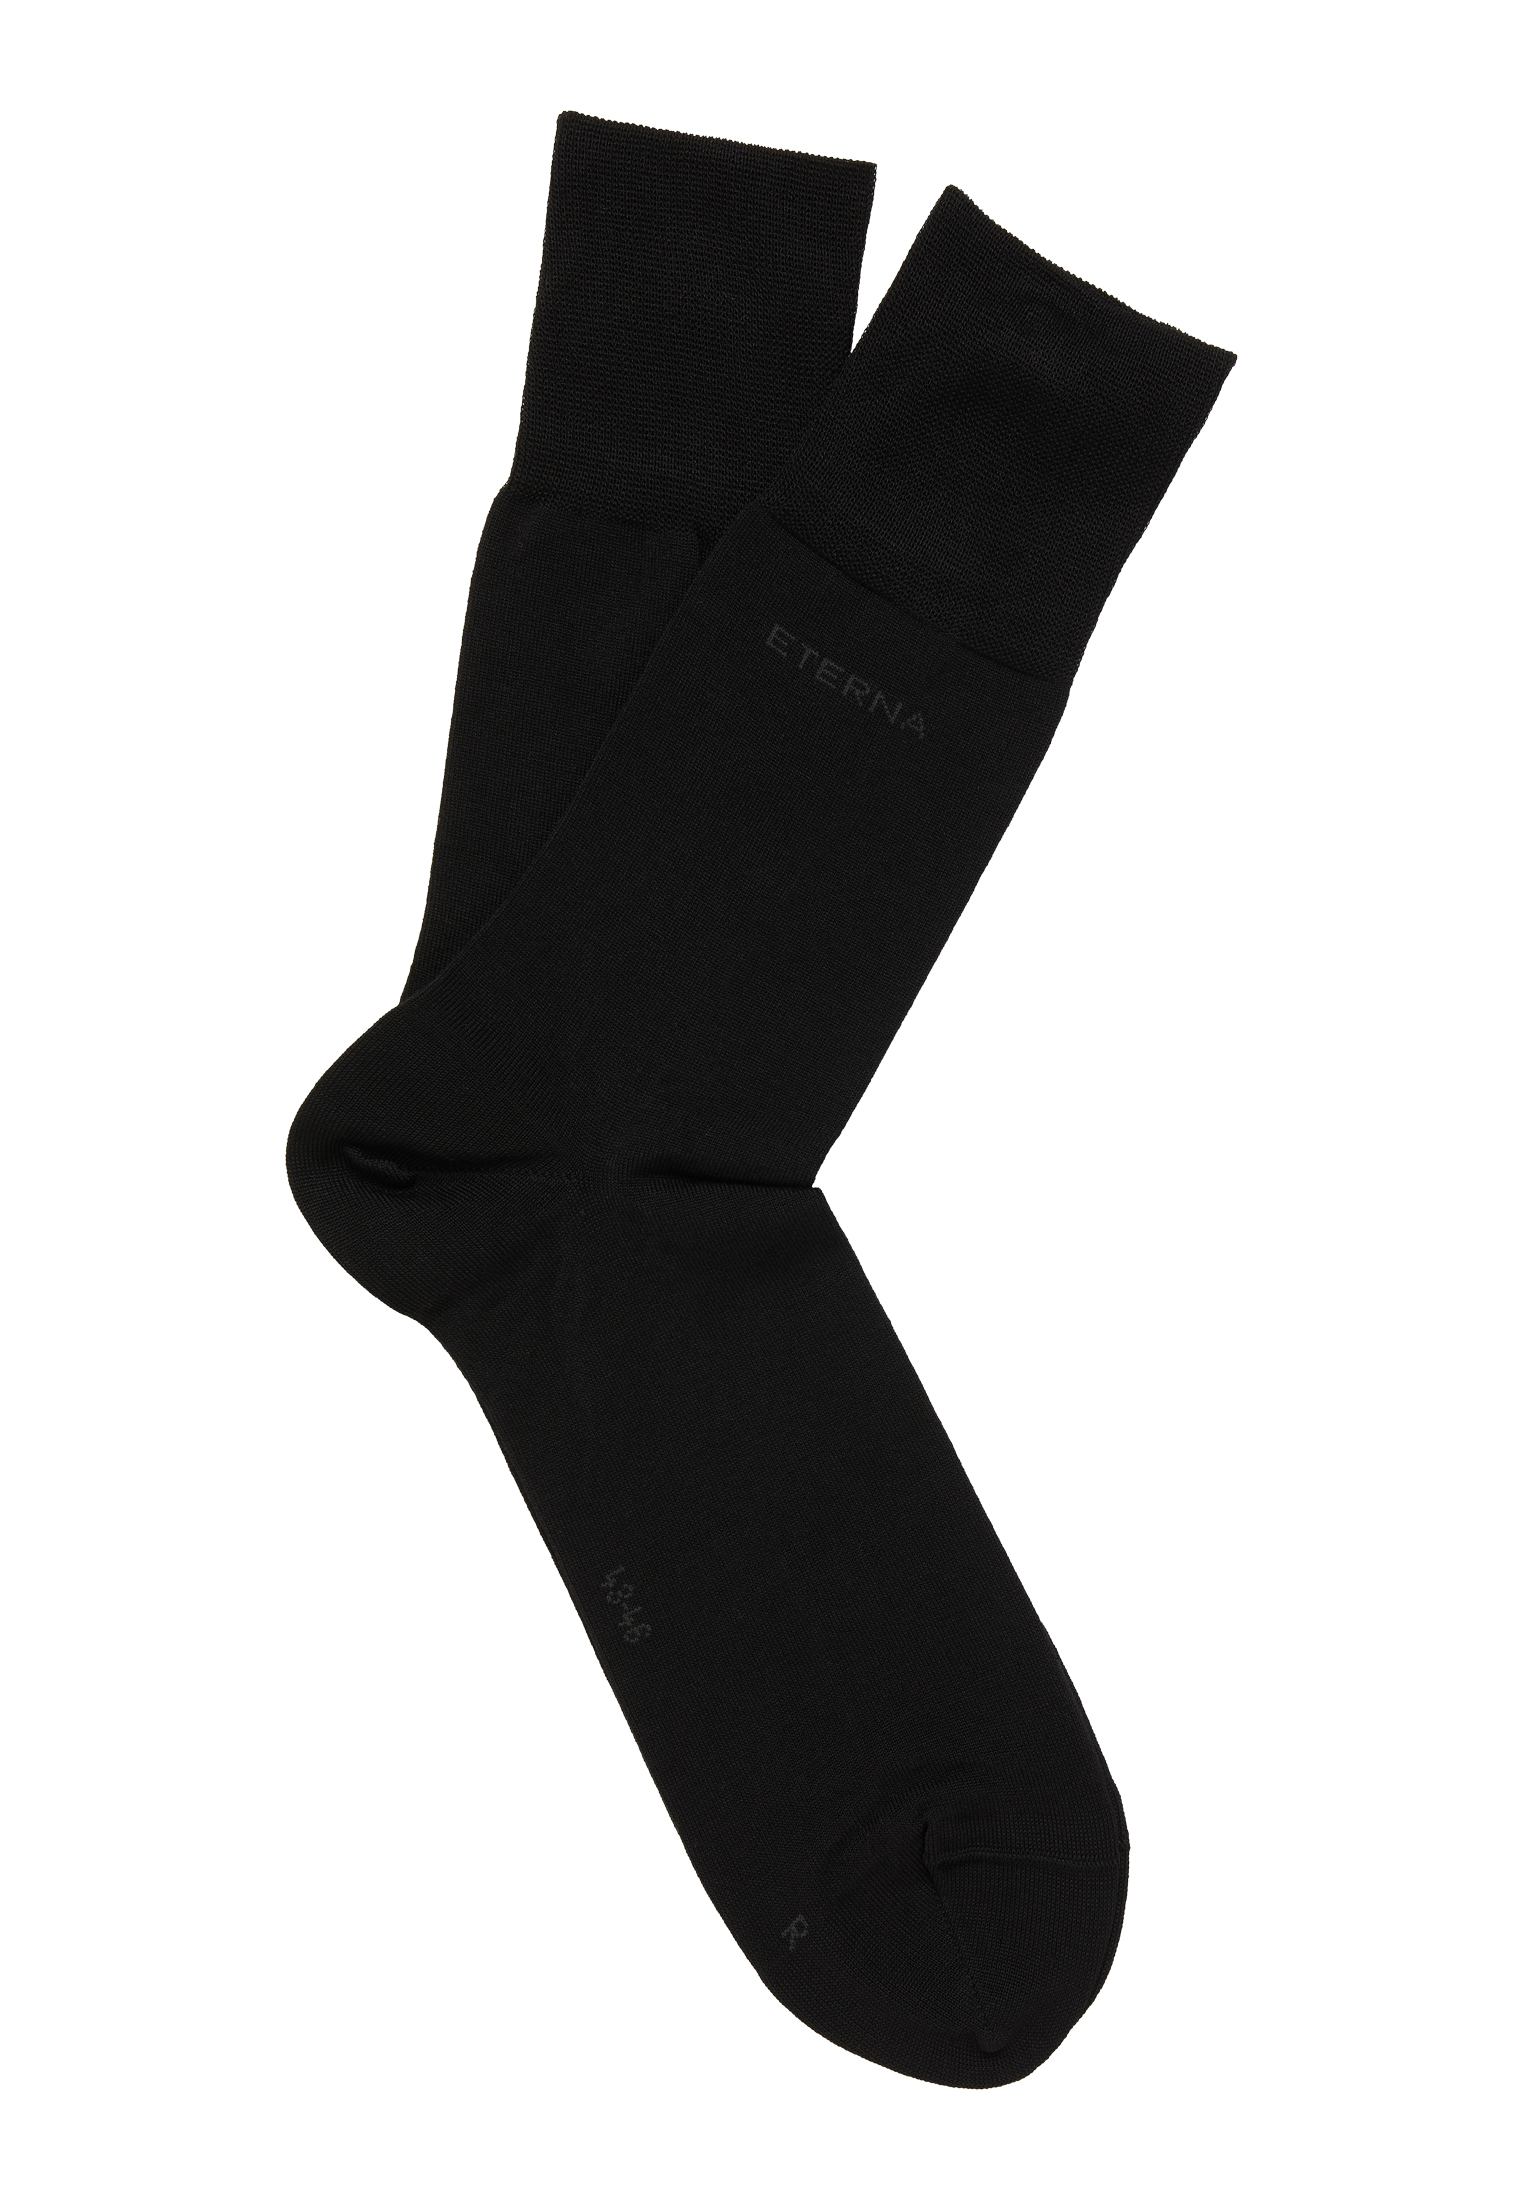 Socken in schwarz unifarben | | 47-48 schwarz 1AC00926-03-91-47-48 